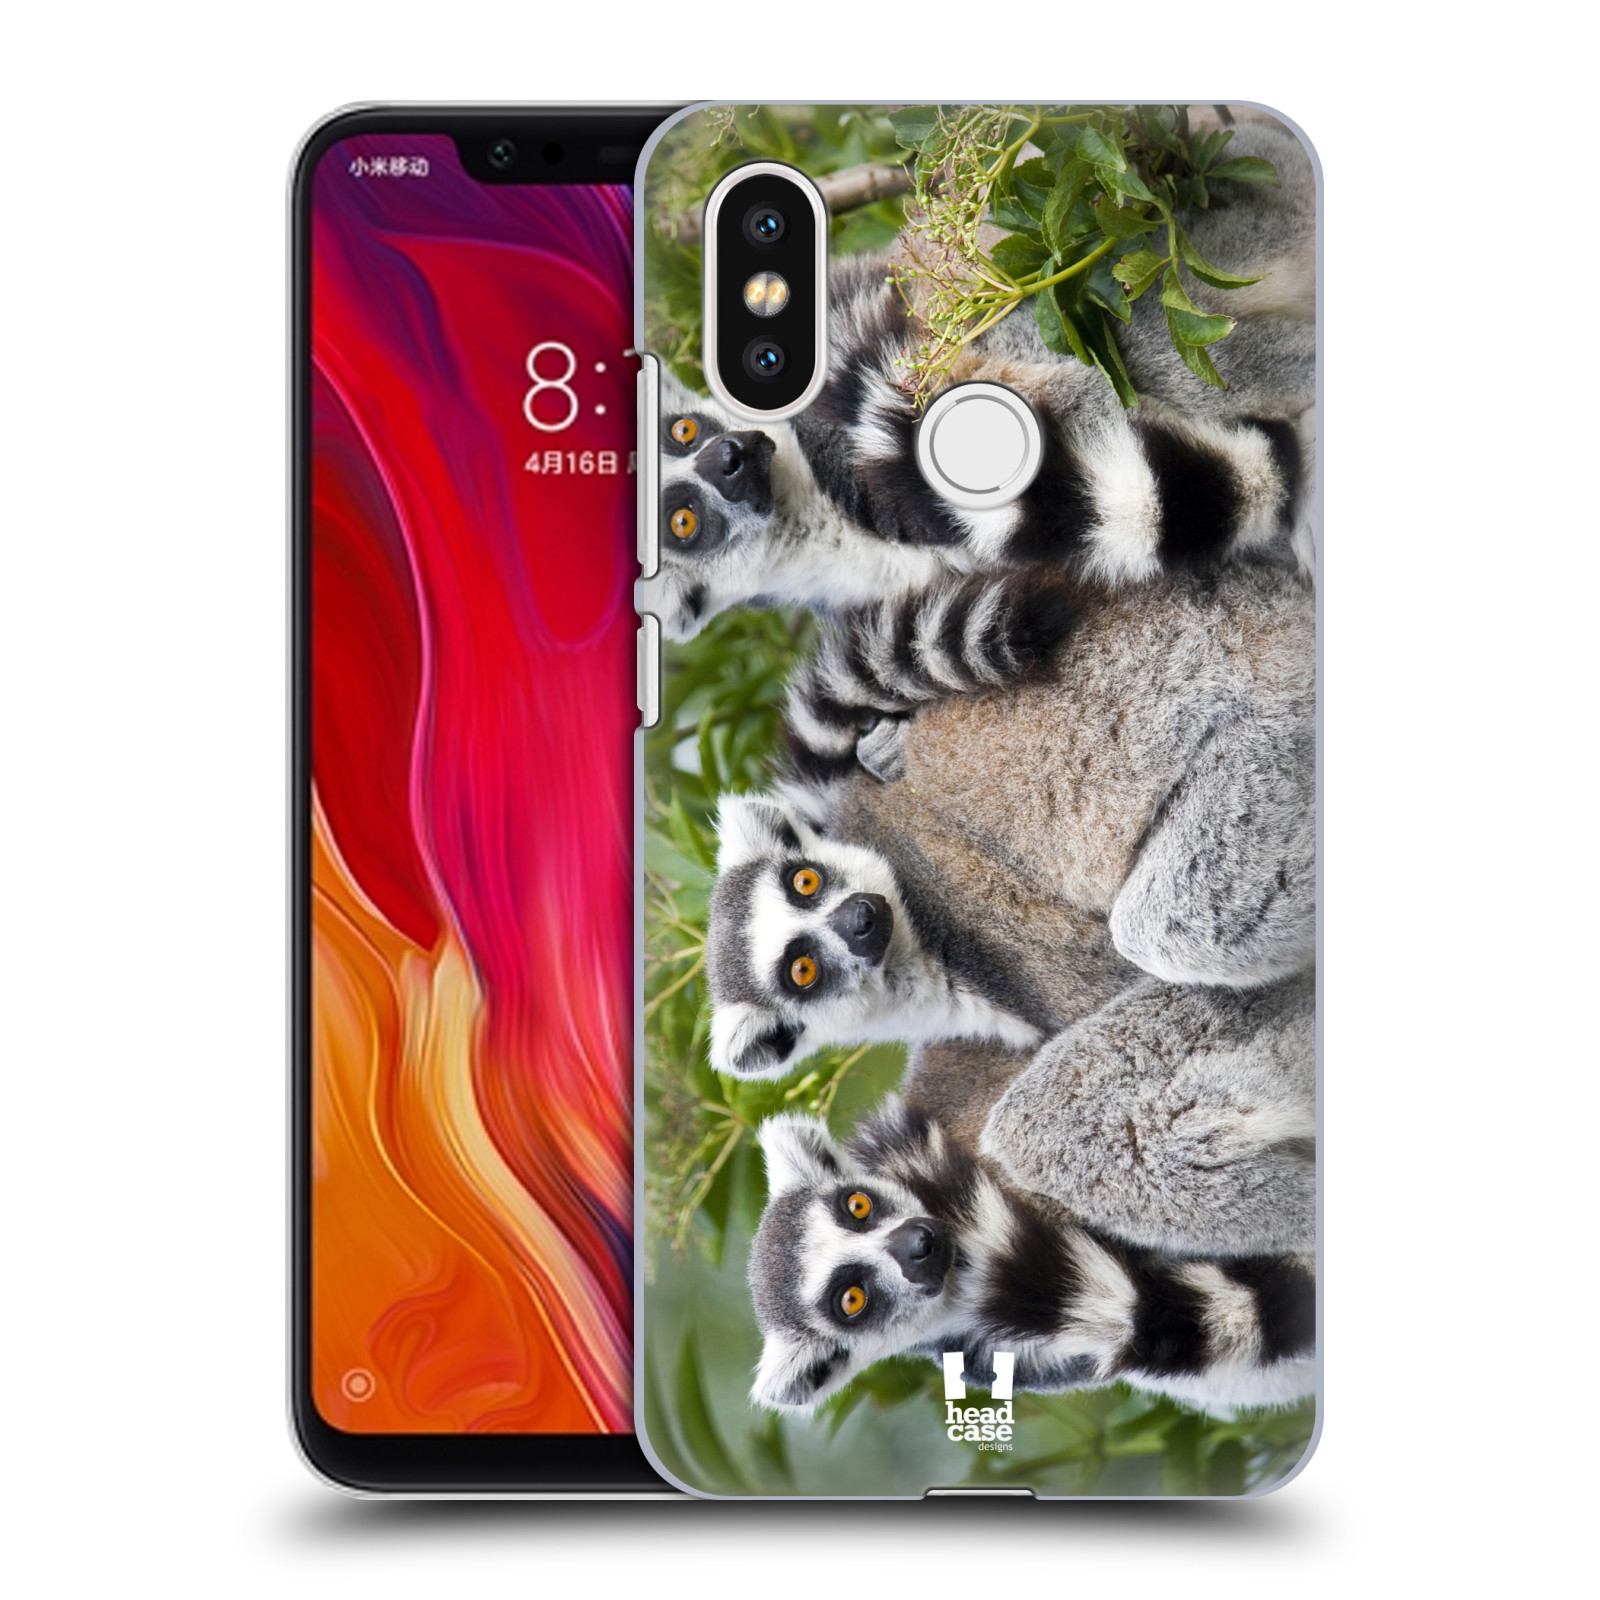 HEAD CASE plastový obal na mobil Xiaomi Mi 8 vzor slavná zvířata foto lemur